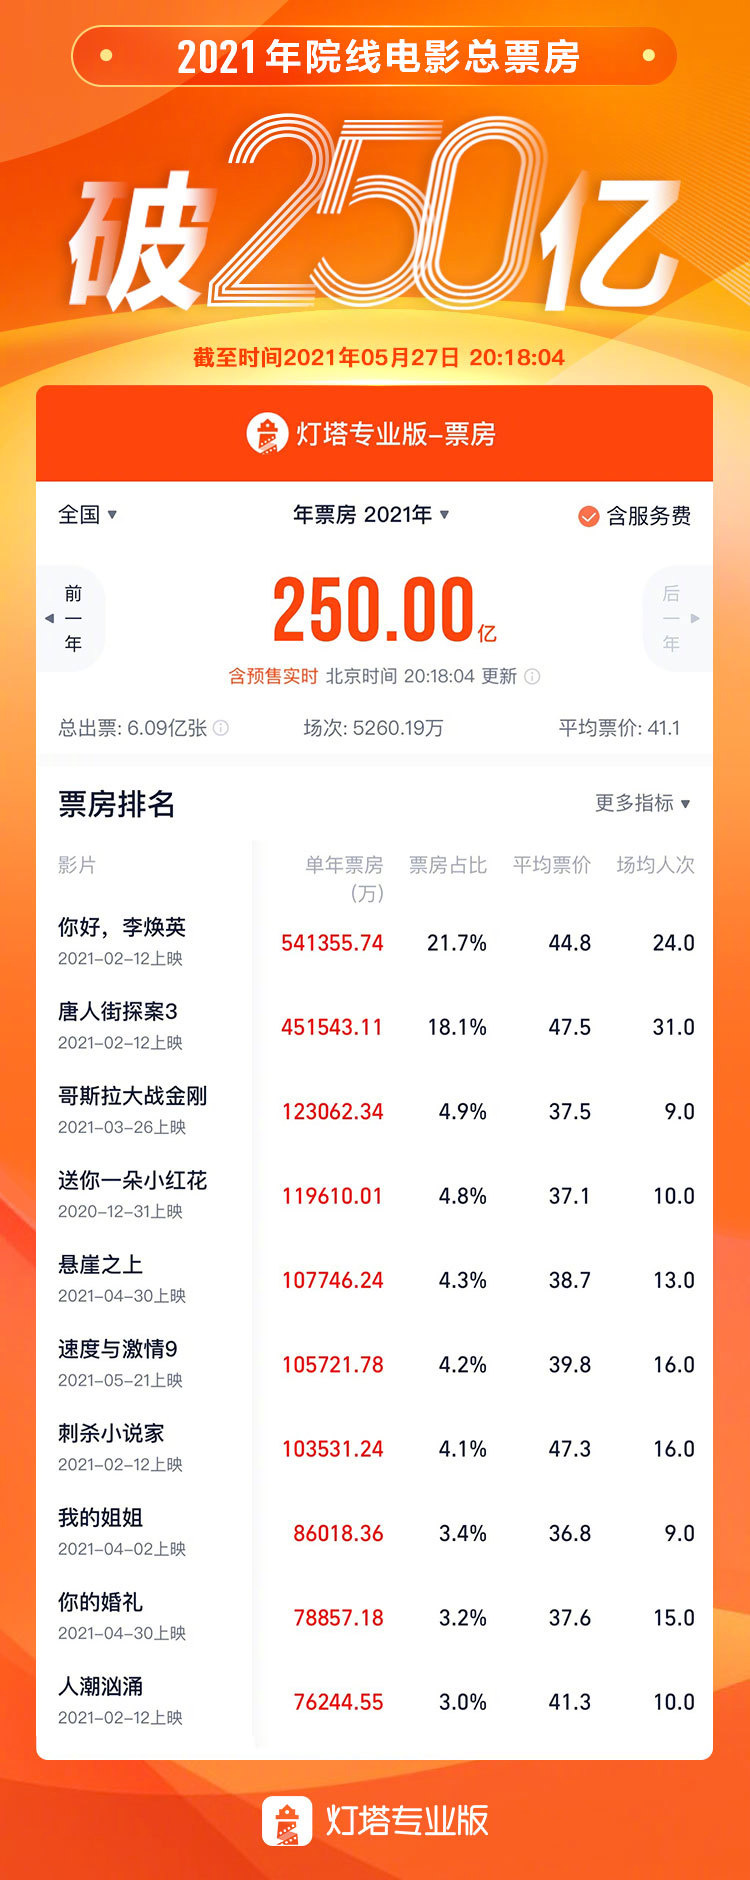 中国电影市场2021年票房破250亿 观影人次达6亿(图2)